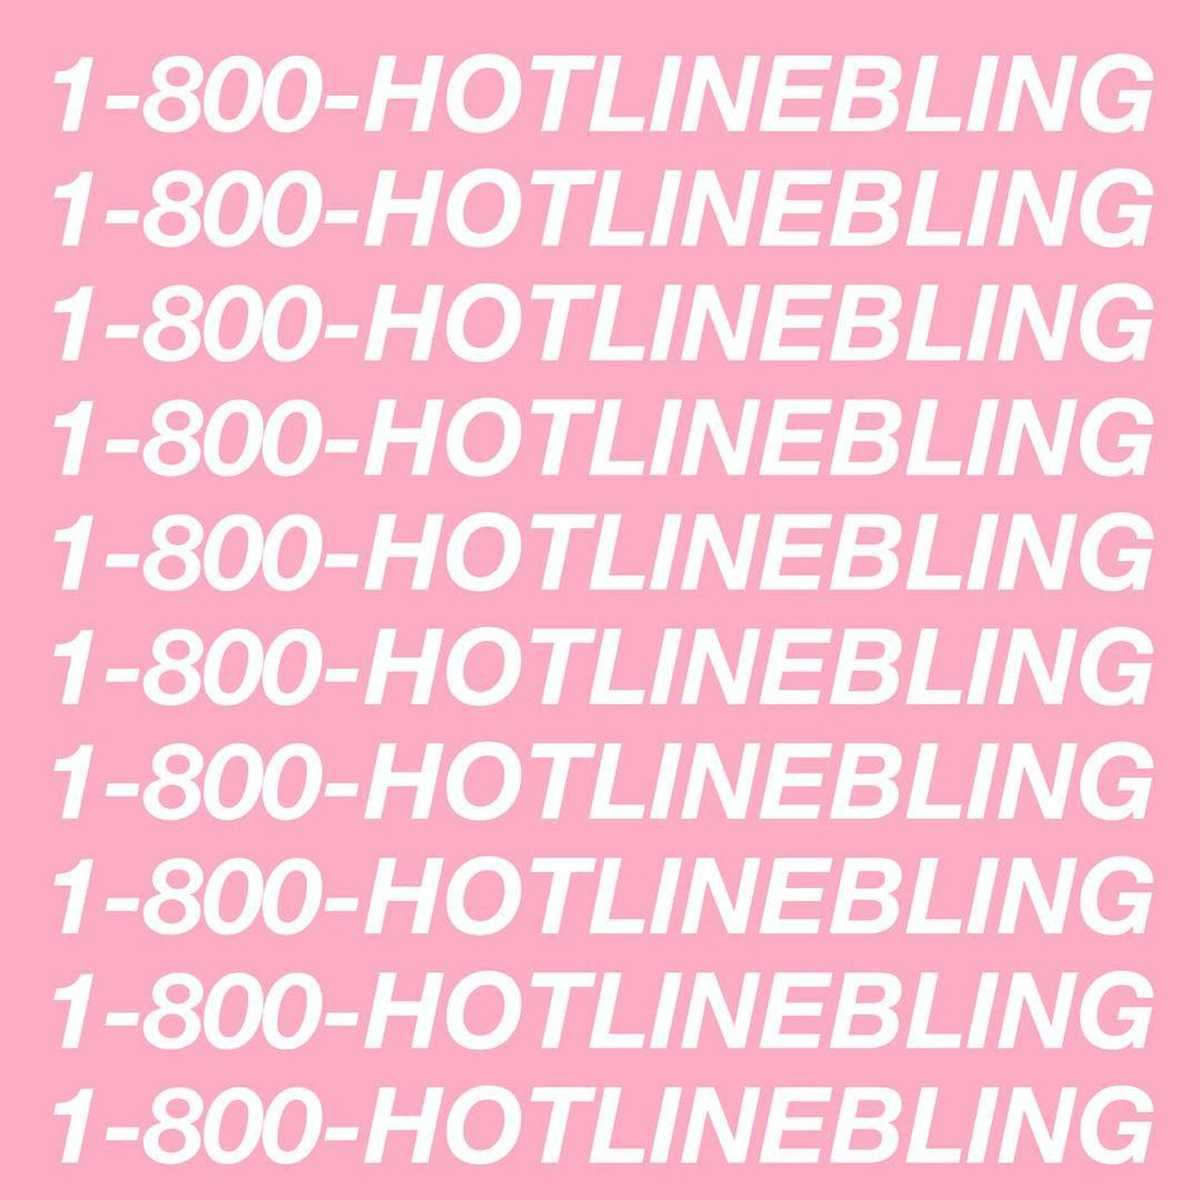 Drake - Hotline Bling